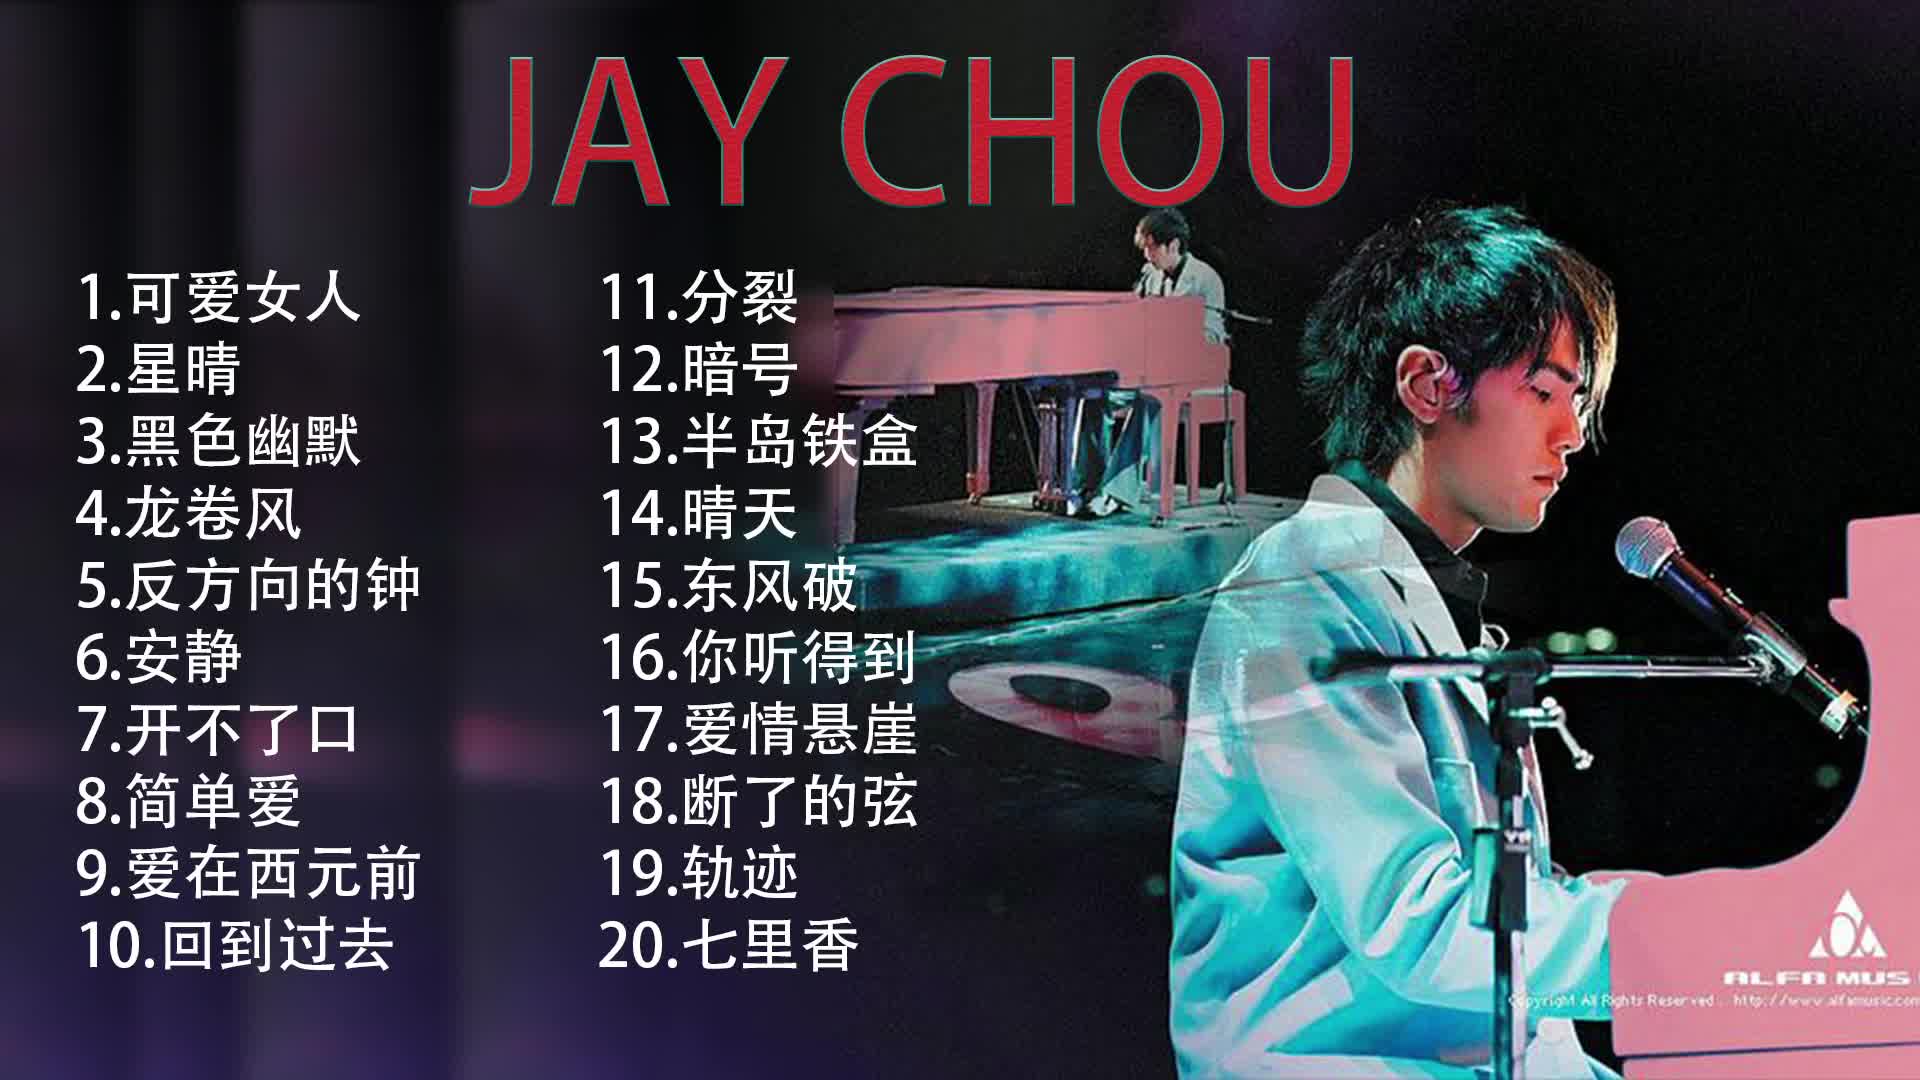 【抖音 TIK TOK】周傑倫Jay Chou – 經典慢歌精選71首串燒 NO.1 (上)